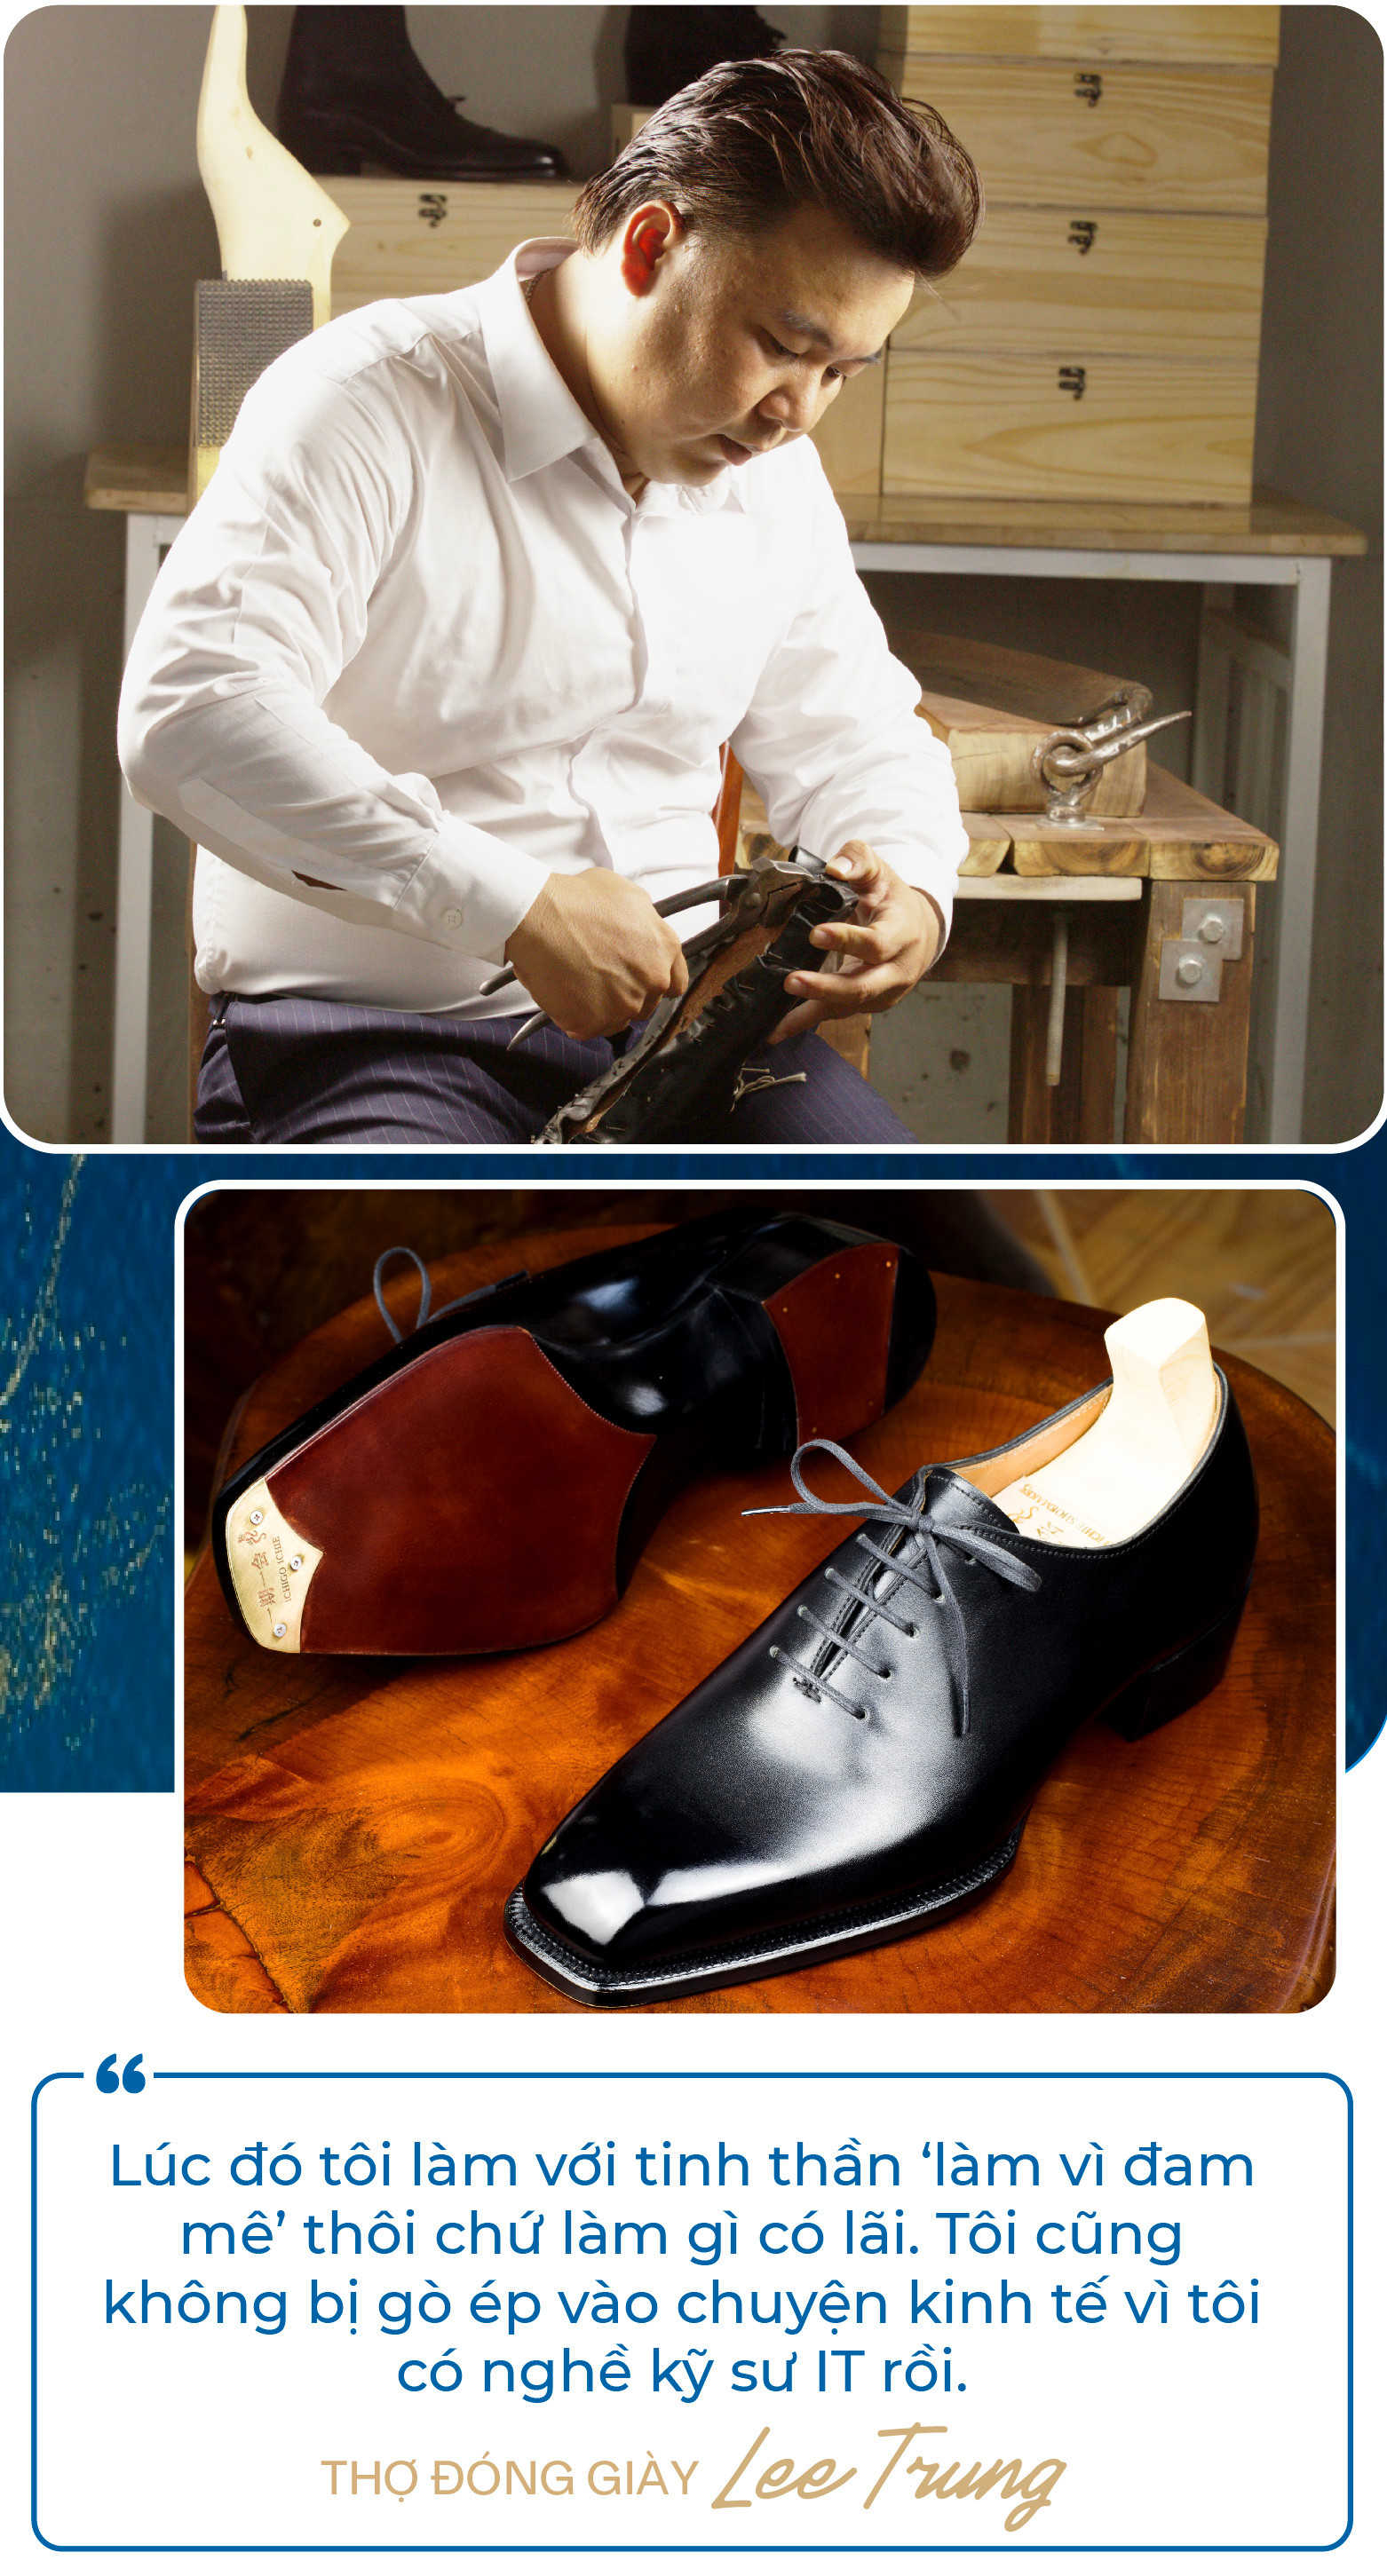 Chàng trai bỏ việc kỹ sư lương nghìn USD để làm thợ đóng giày: Không quảng cáo rầm rộ, giày giá nghìn USD vẫn “đắt hàng”, khẳng định làm vì đam mê - Ảnh 6.